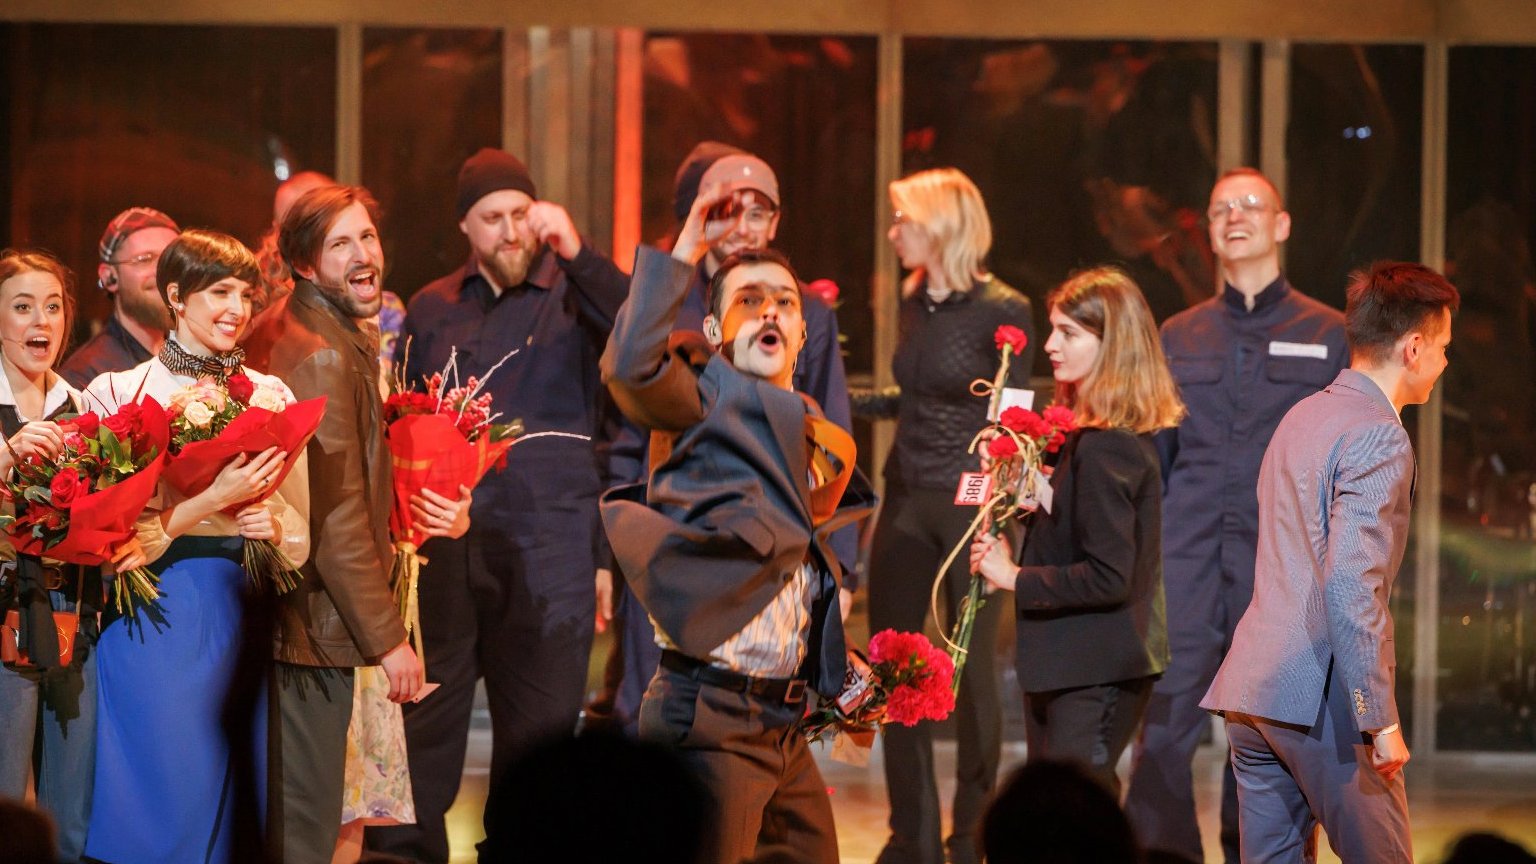 Kilka osób stoi na scenie, niketóre trzymają kwiaty. Mężczyzna z przodu unosi rękę w geście radości.